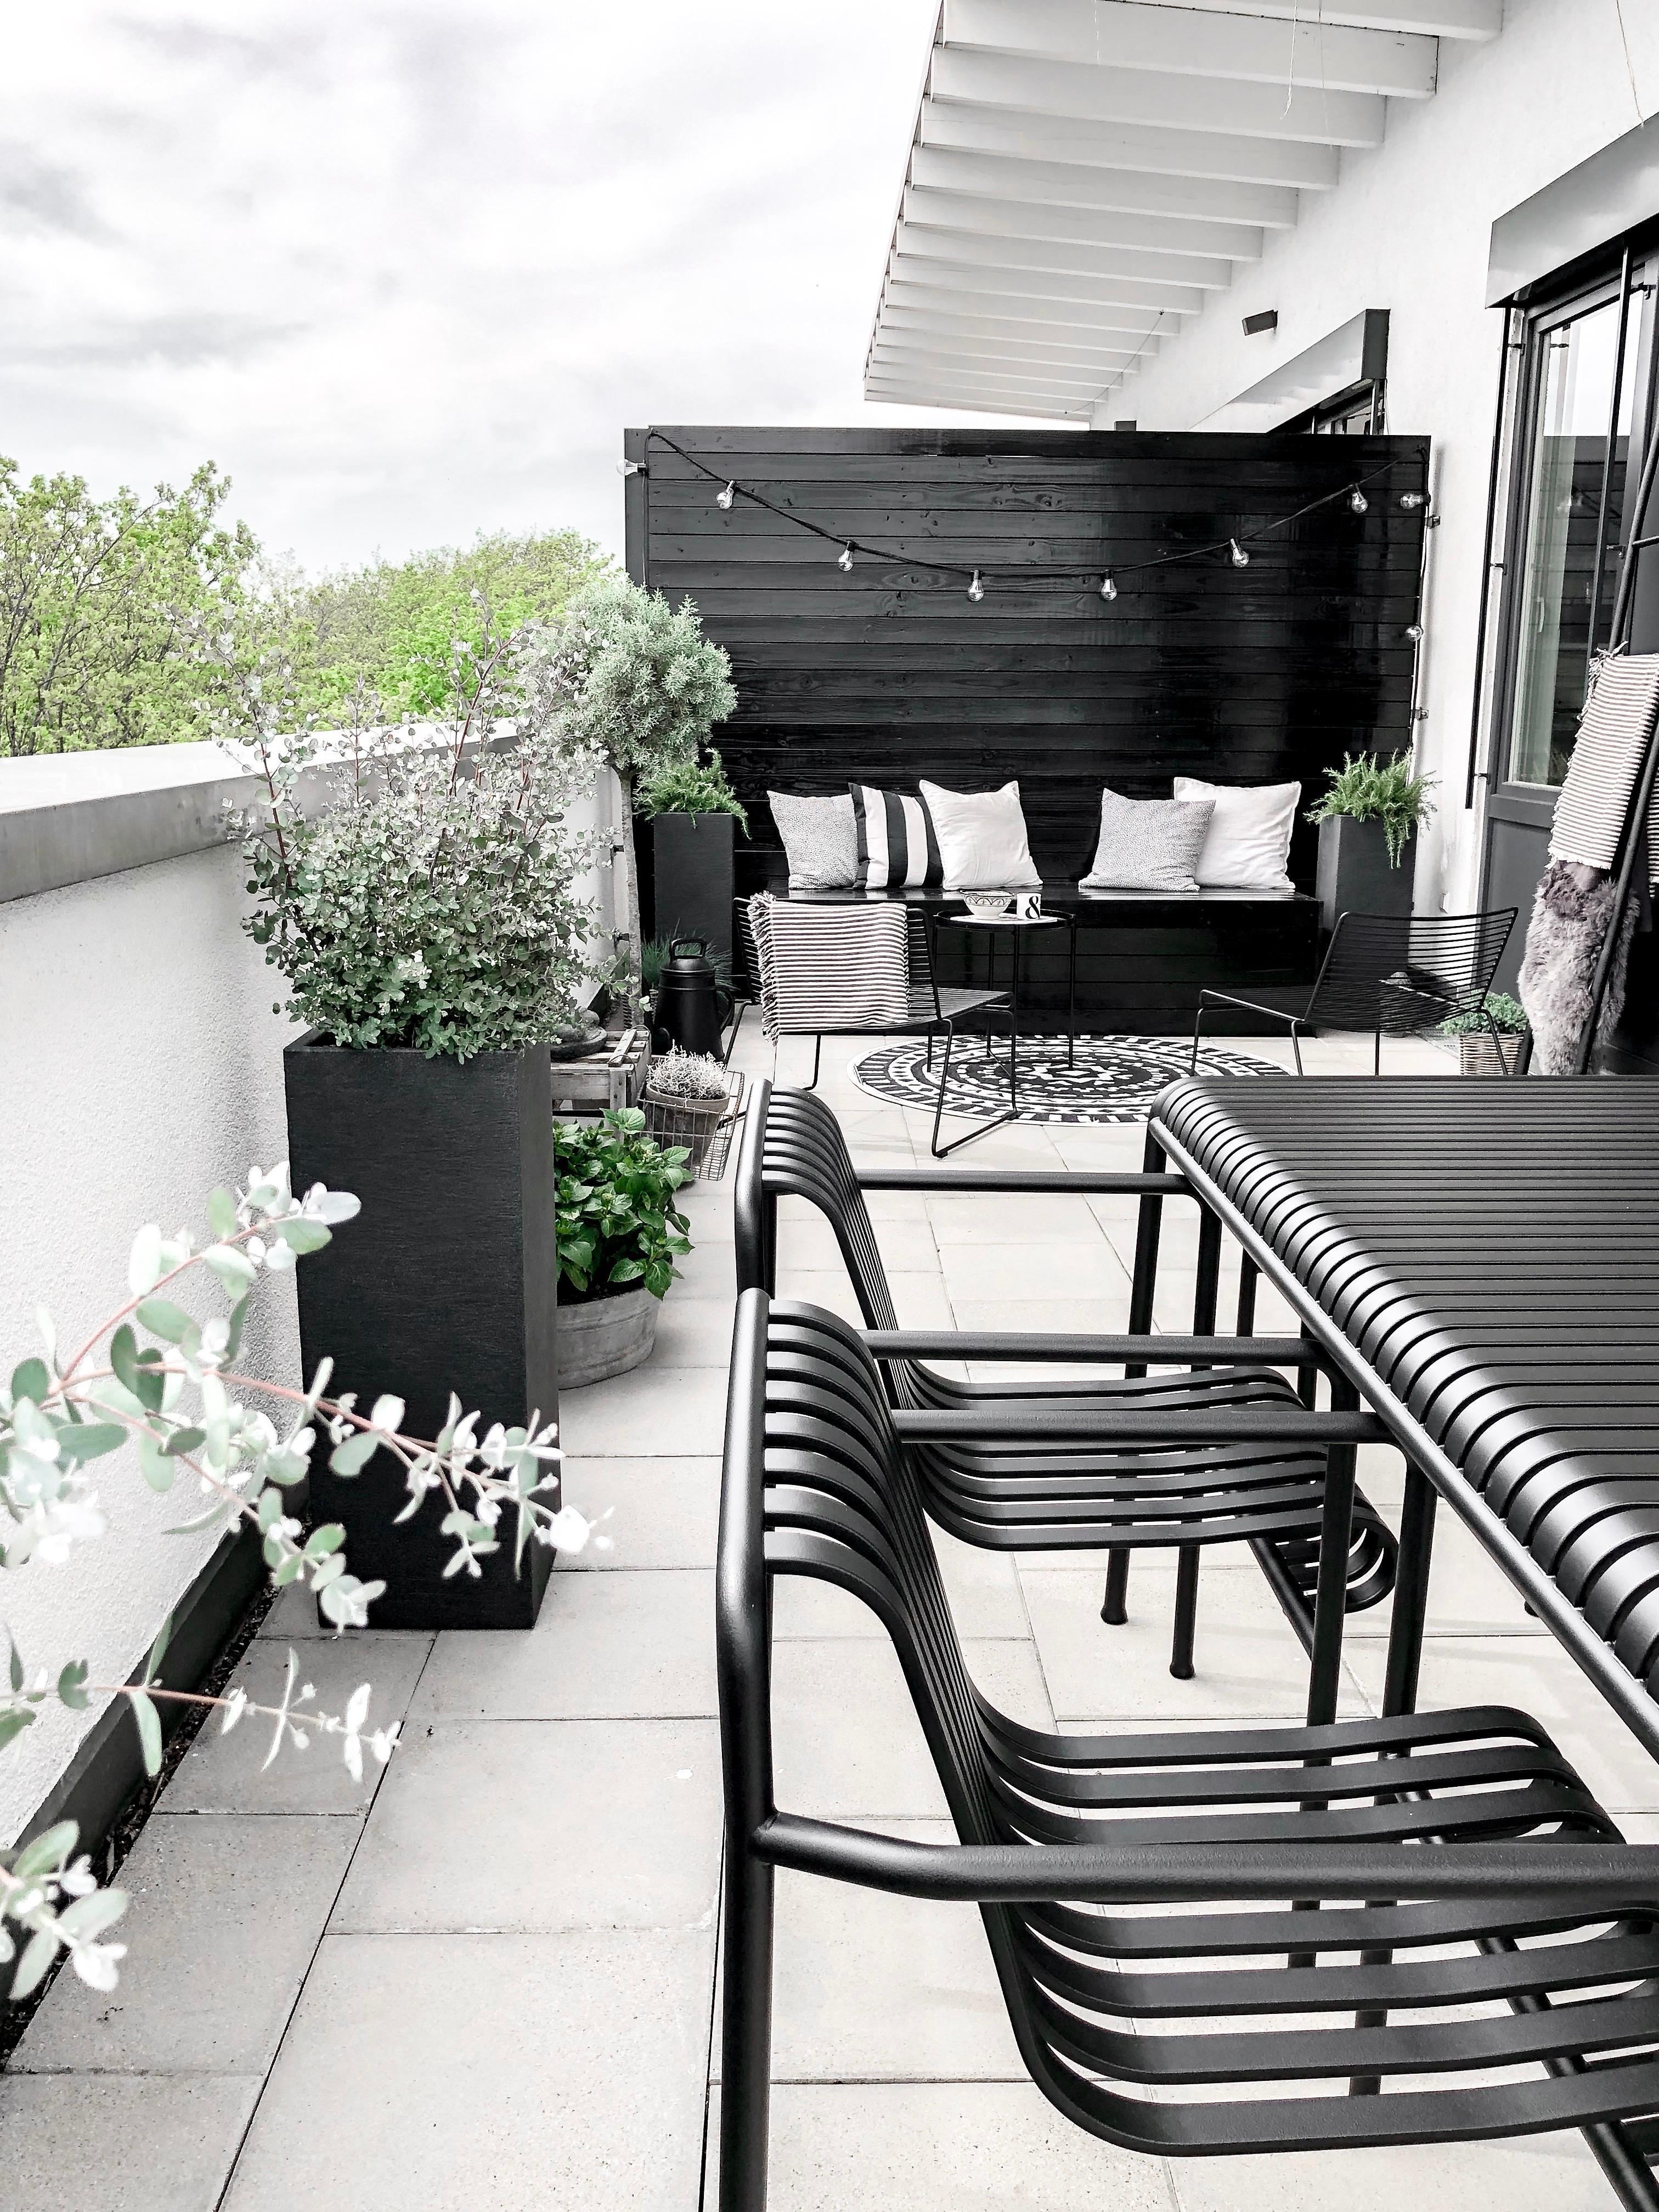 Hoffentlich kommt bald der Sommer, sodass wir unsere Terrasse genießen können 🖤
#terrasseninspo #heimeligeinspo